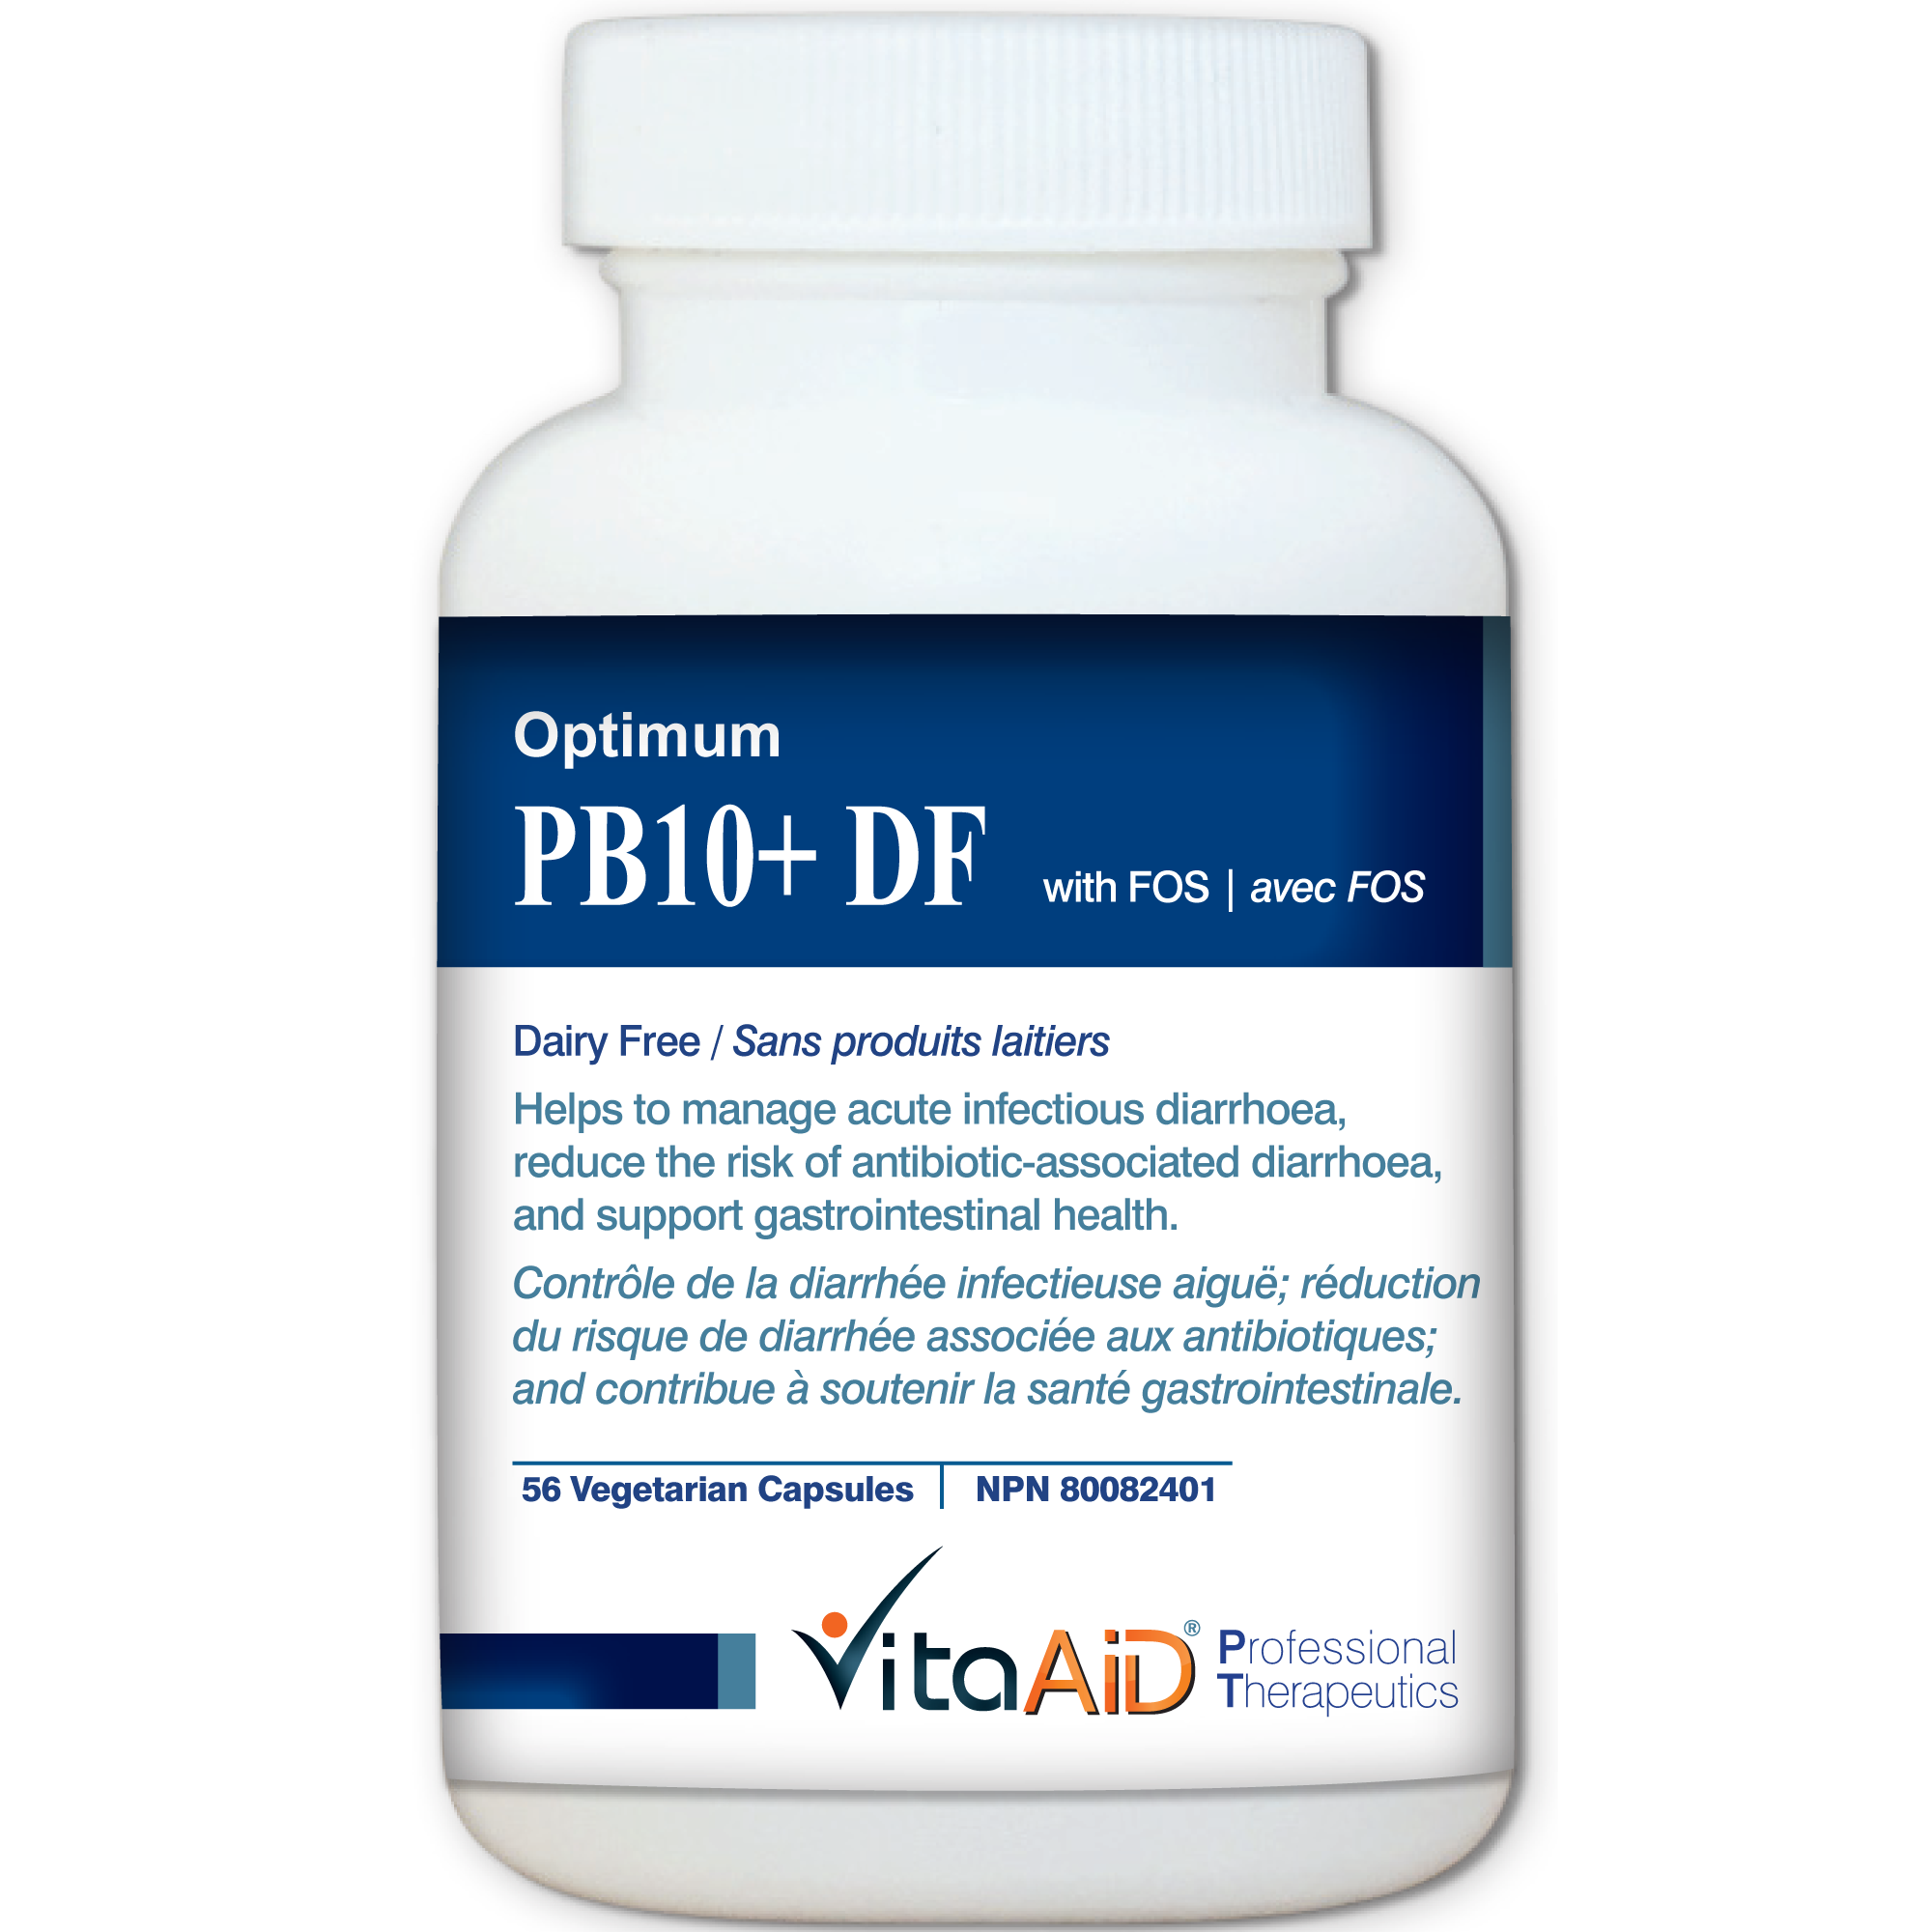 Optimum-PB10 DF (with FOS) Multi-Strain/Dairy Free Probiotic Formula 56 veg caps - iwellnessbox